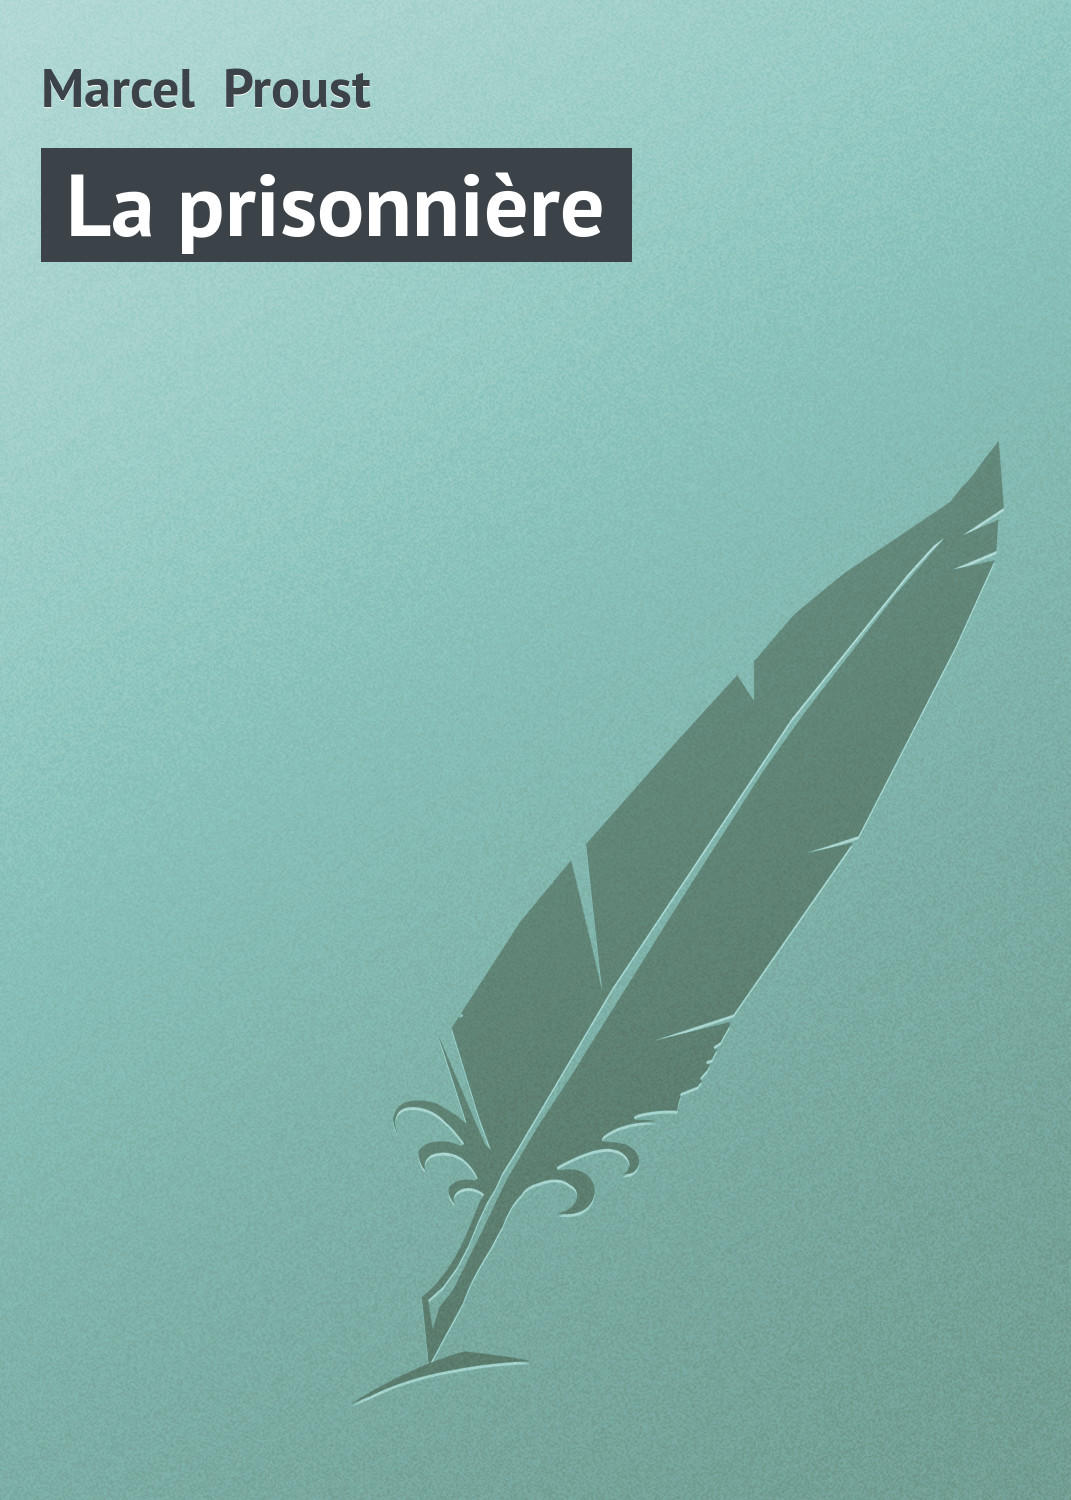 Книга La prisonnière из серии , созданная Marcel Proust, может относится к жанру Зарубежная старинная литература, Зарубежная классика. Стоимость электронной книги La prisonnière с идентификатором 21105038 составляет 5.99 руб.